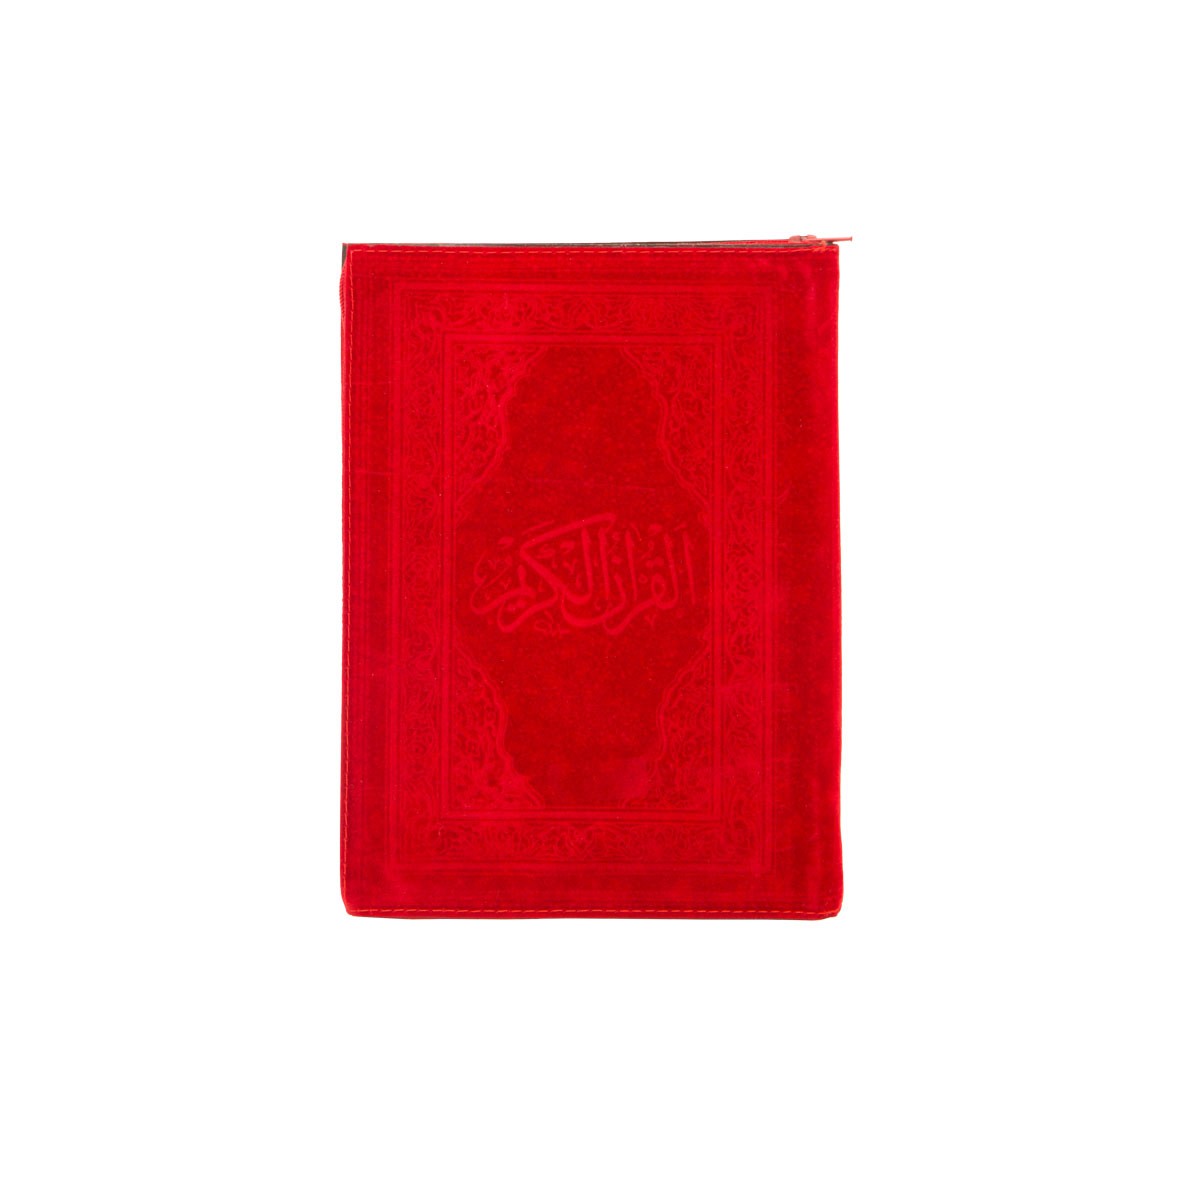 Küçük Boy Kadife Kılıflı Kur'an-ı Kerim (Kırmızı Renk)